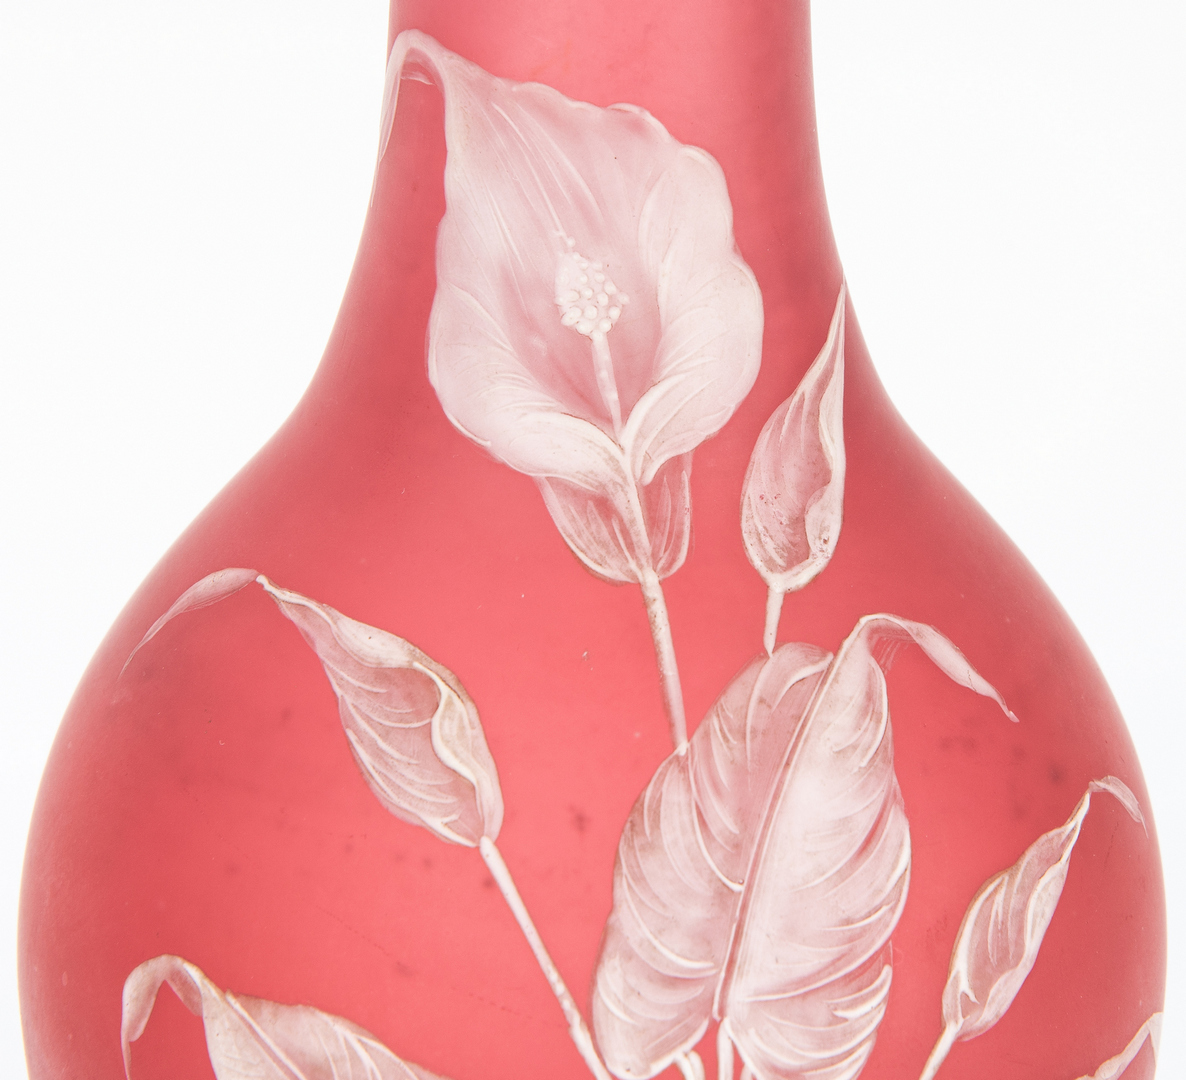 Lot 471: Webb Cameo Glass Vase, attrib. Thomas Webb